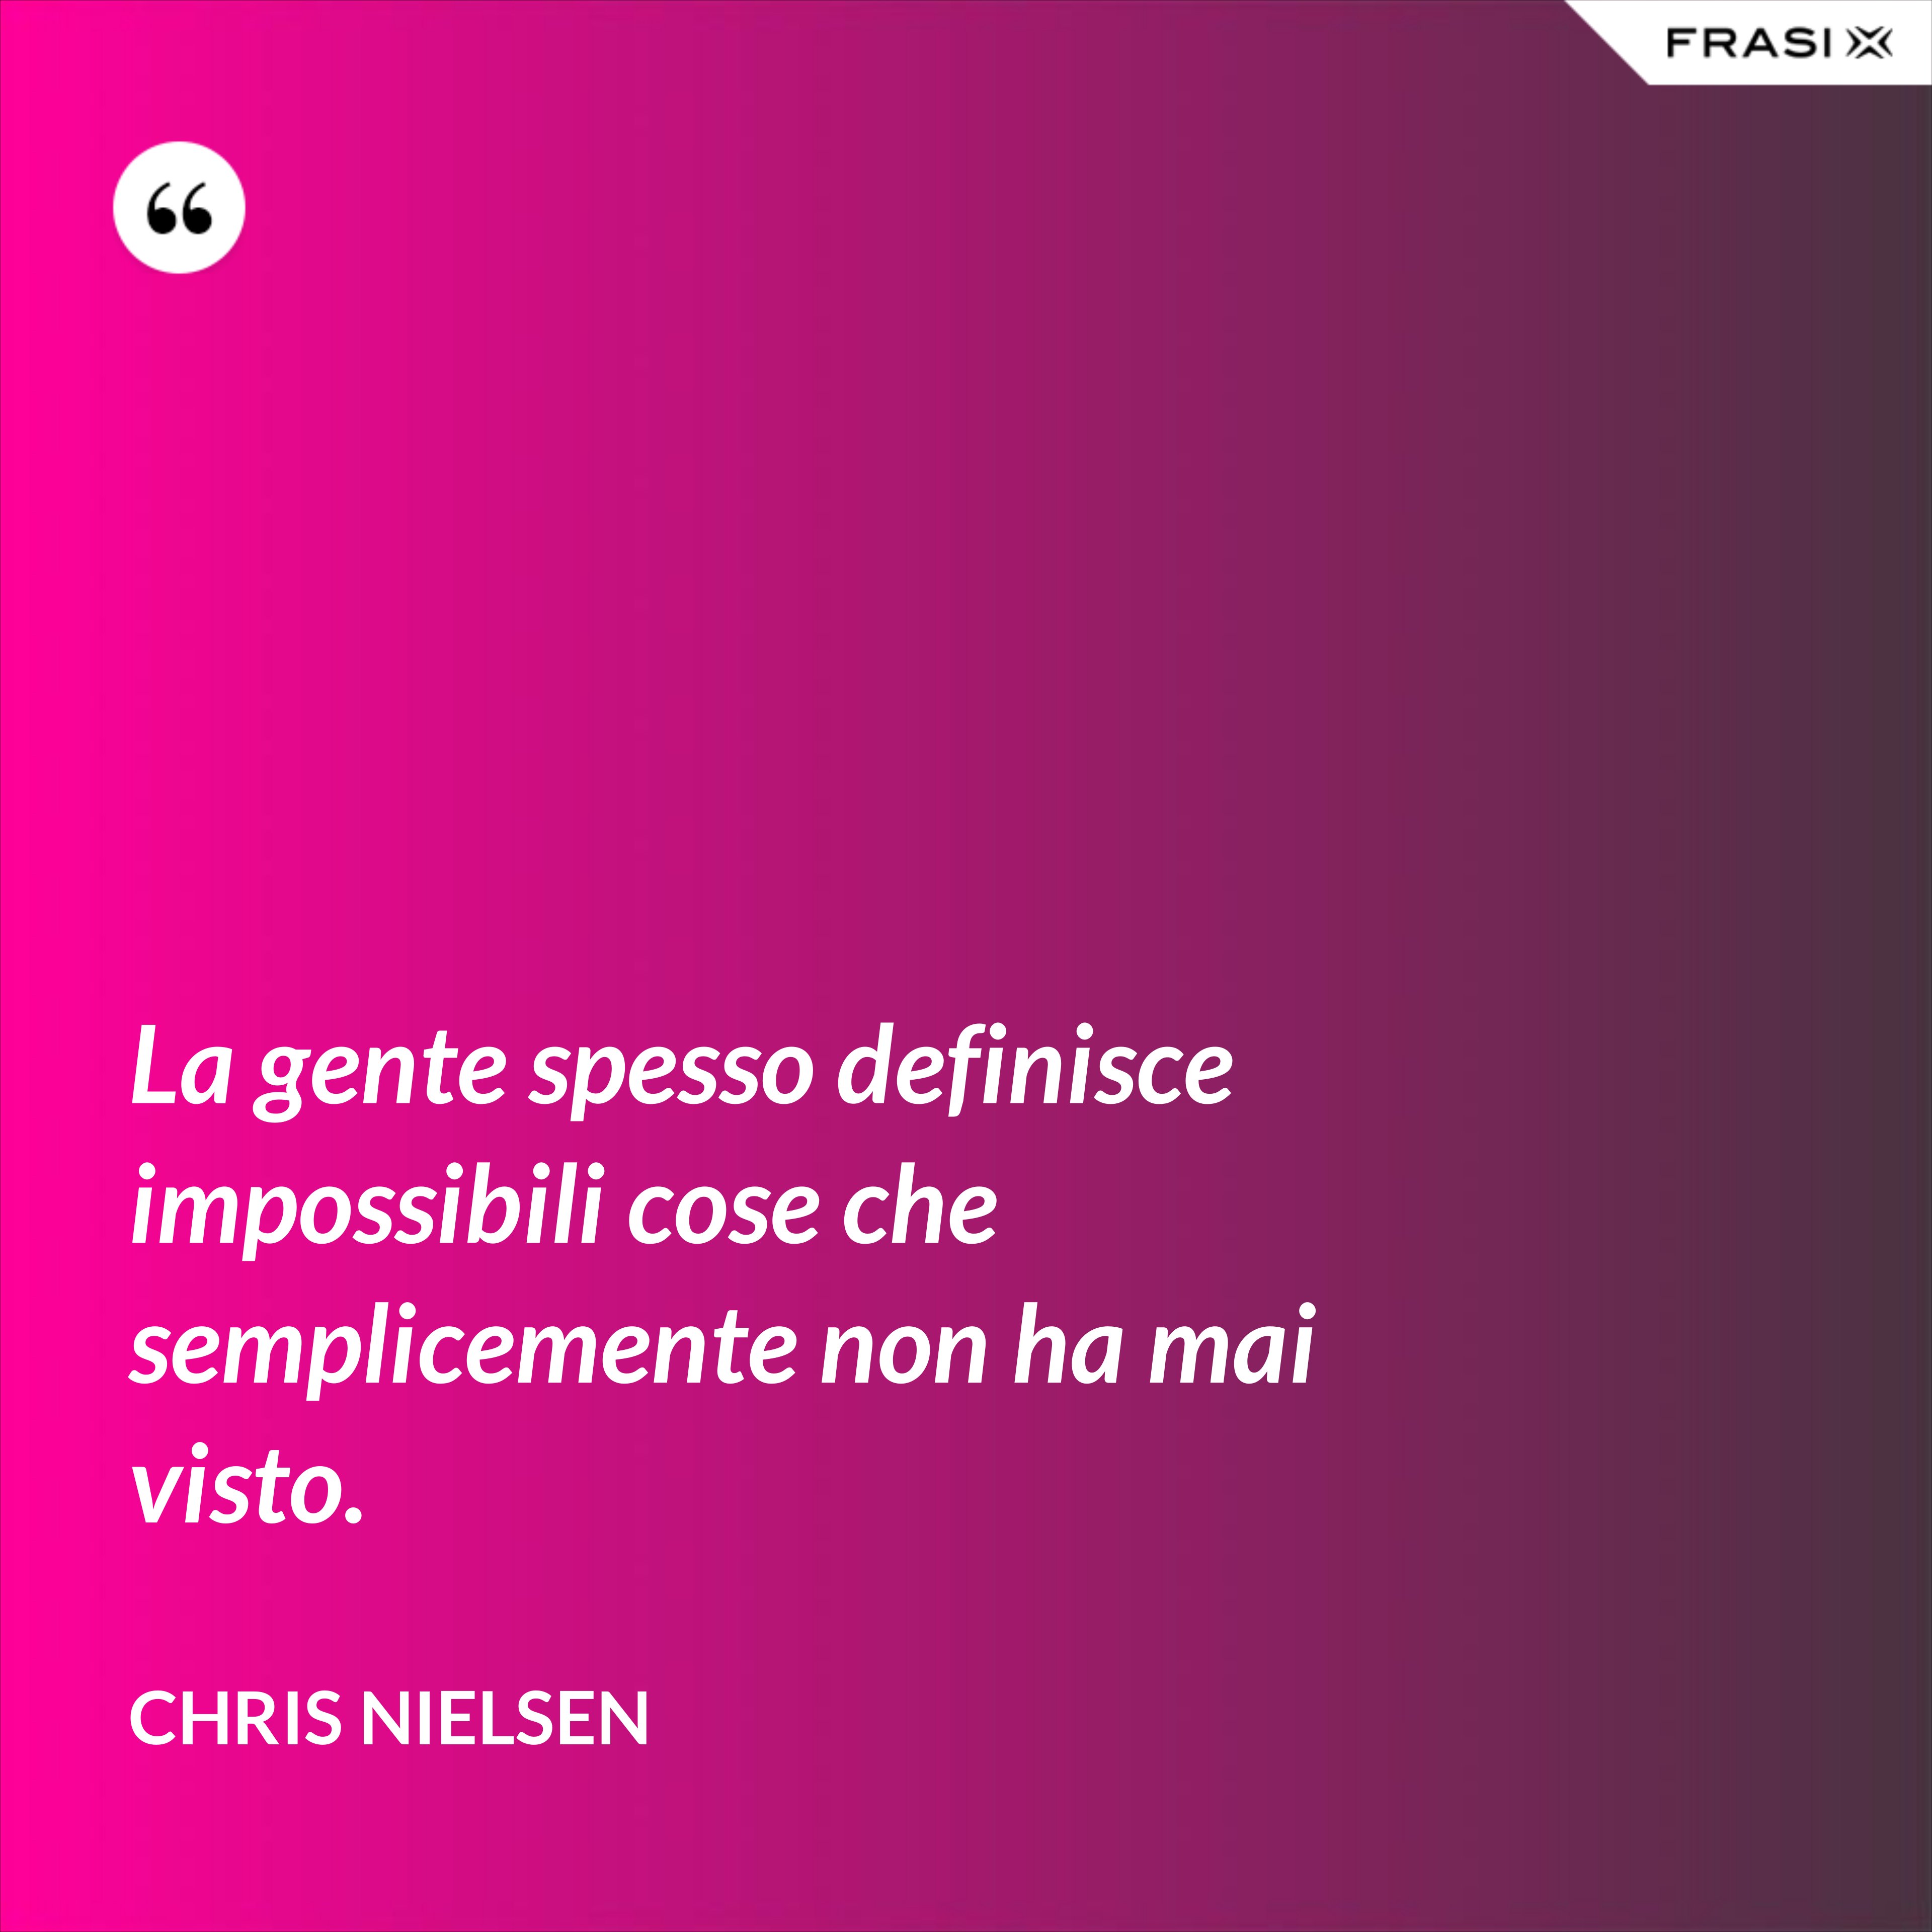 La gente spesso definisce impossibili cose che semplicemente non ha mai visto. - Chris Nielsen